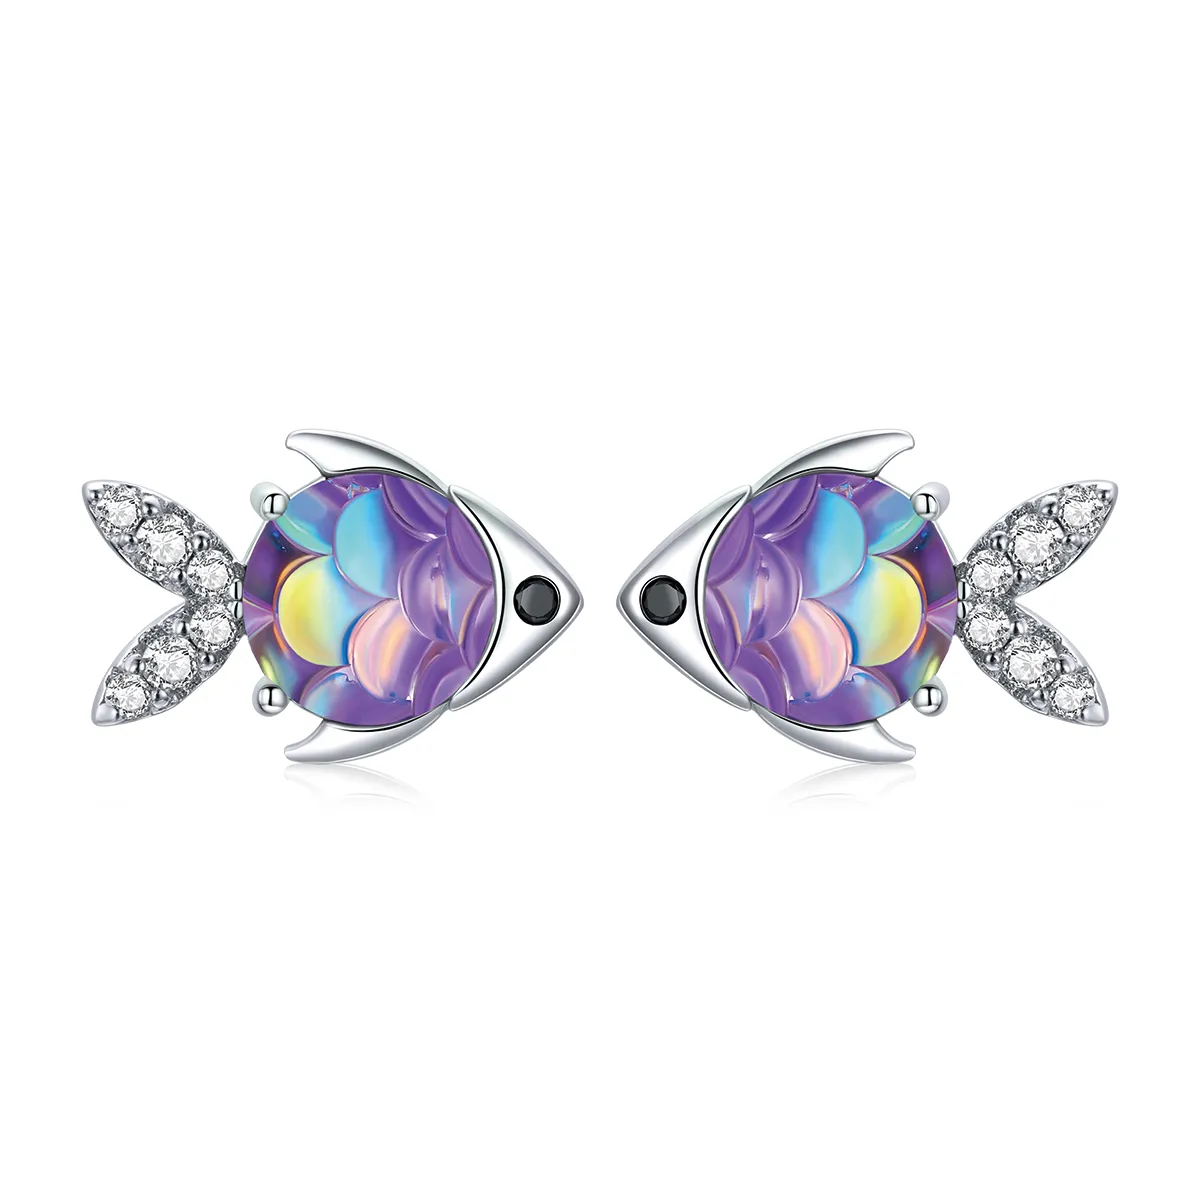 Pandora Style Silver Happy Little Fish Stud Earrings - SCE1028